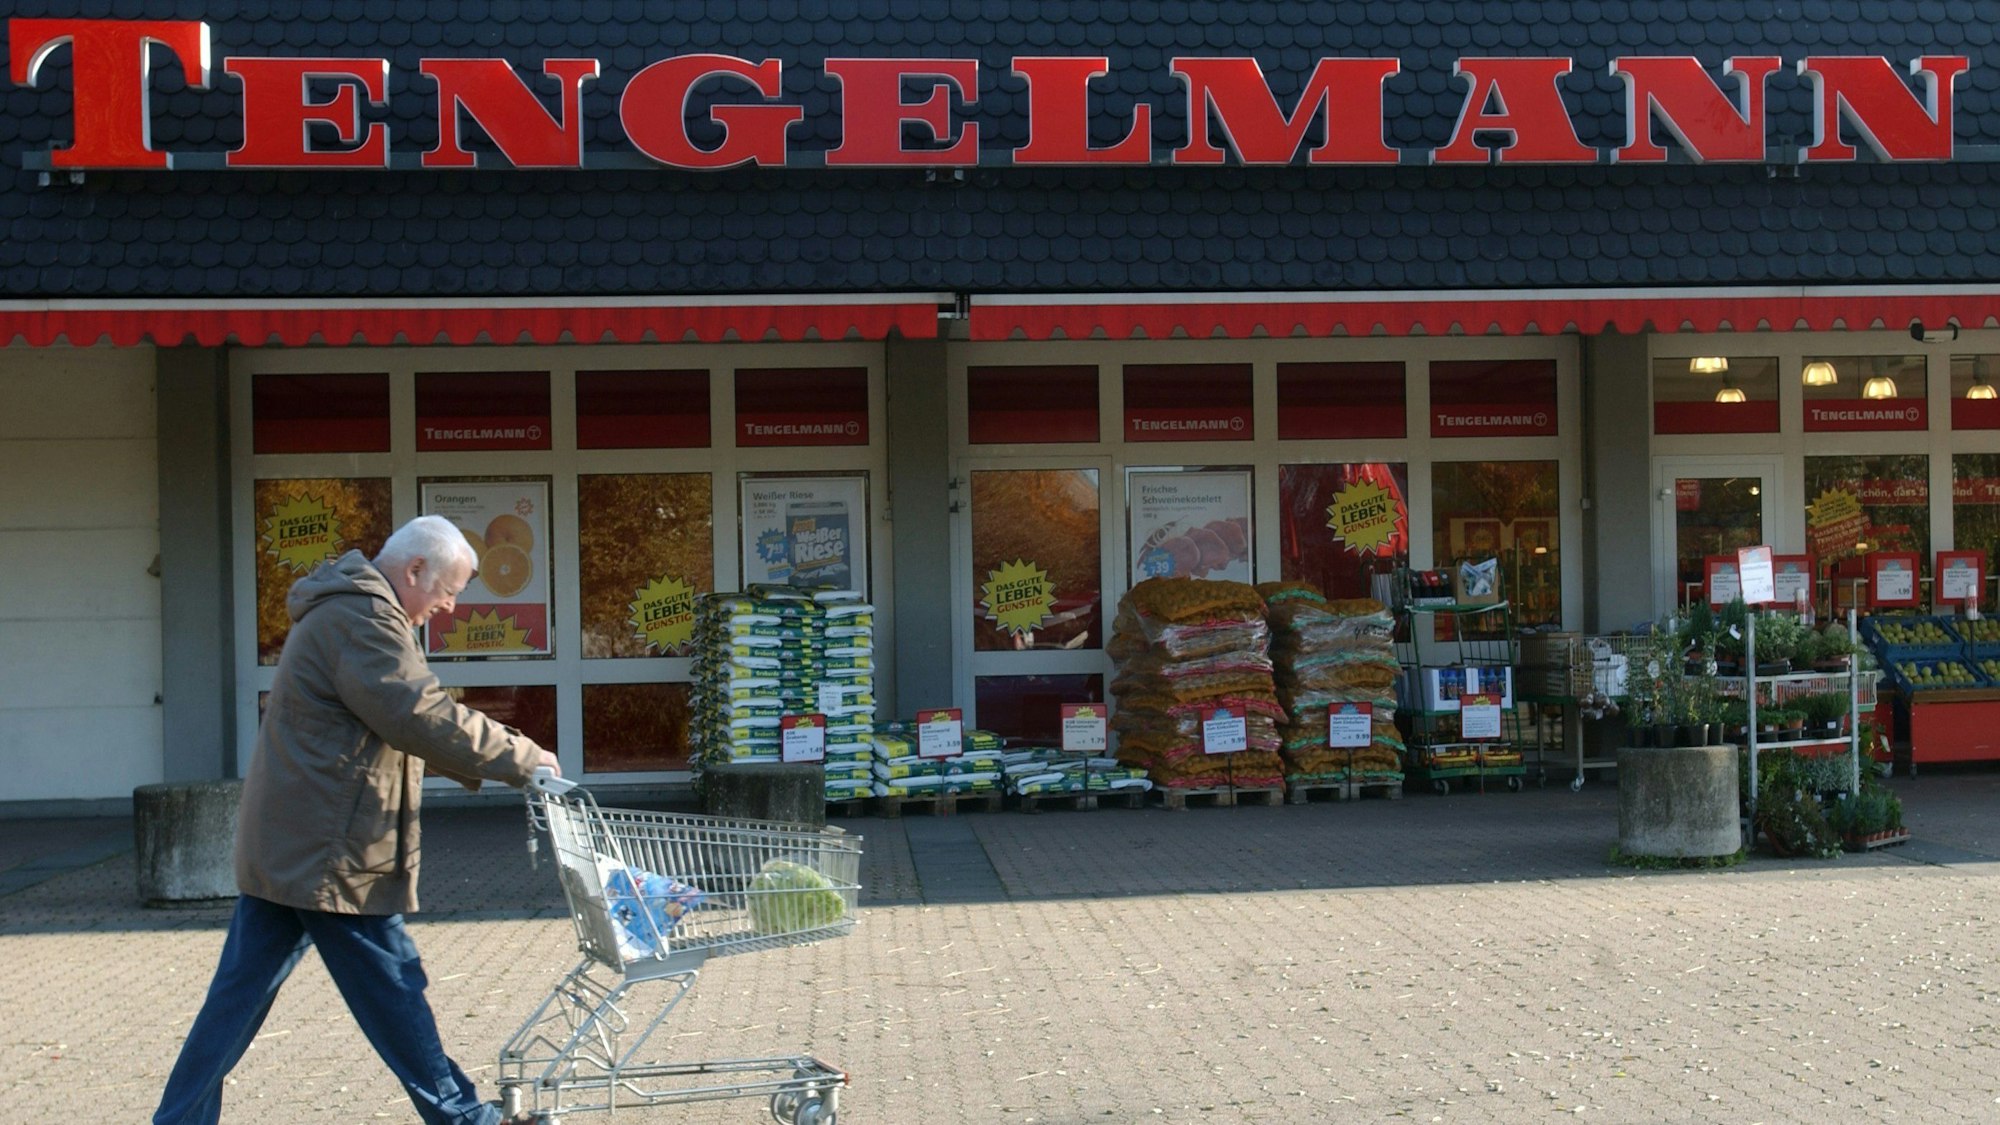 Ein Mann schiebt am Mittwoch (05.11.2003) einen Einkaufswagen vor einem "Tengelmann"-Laden in Mülheim an der Ruhr vorbei.